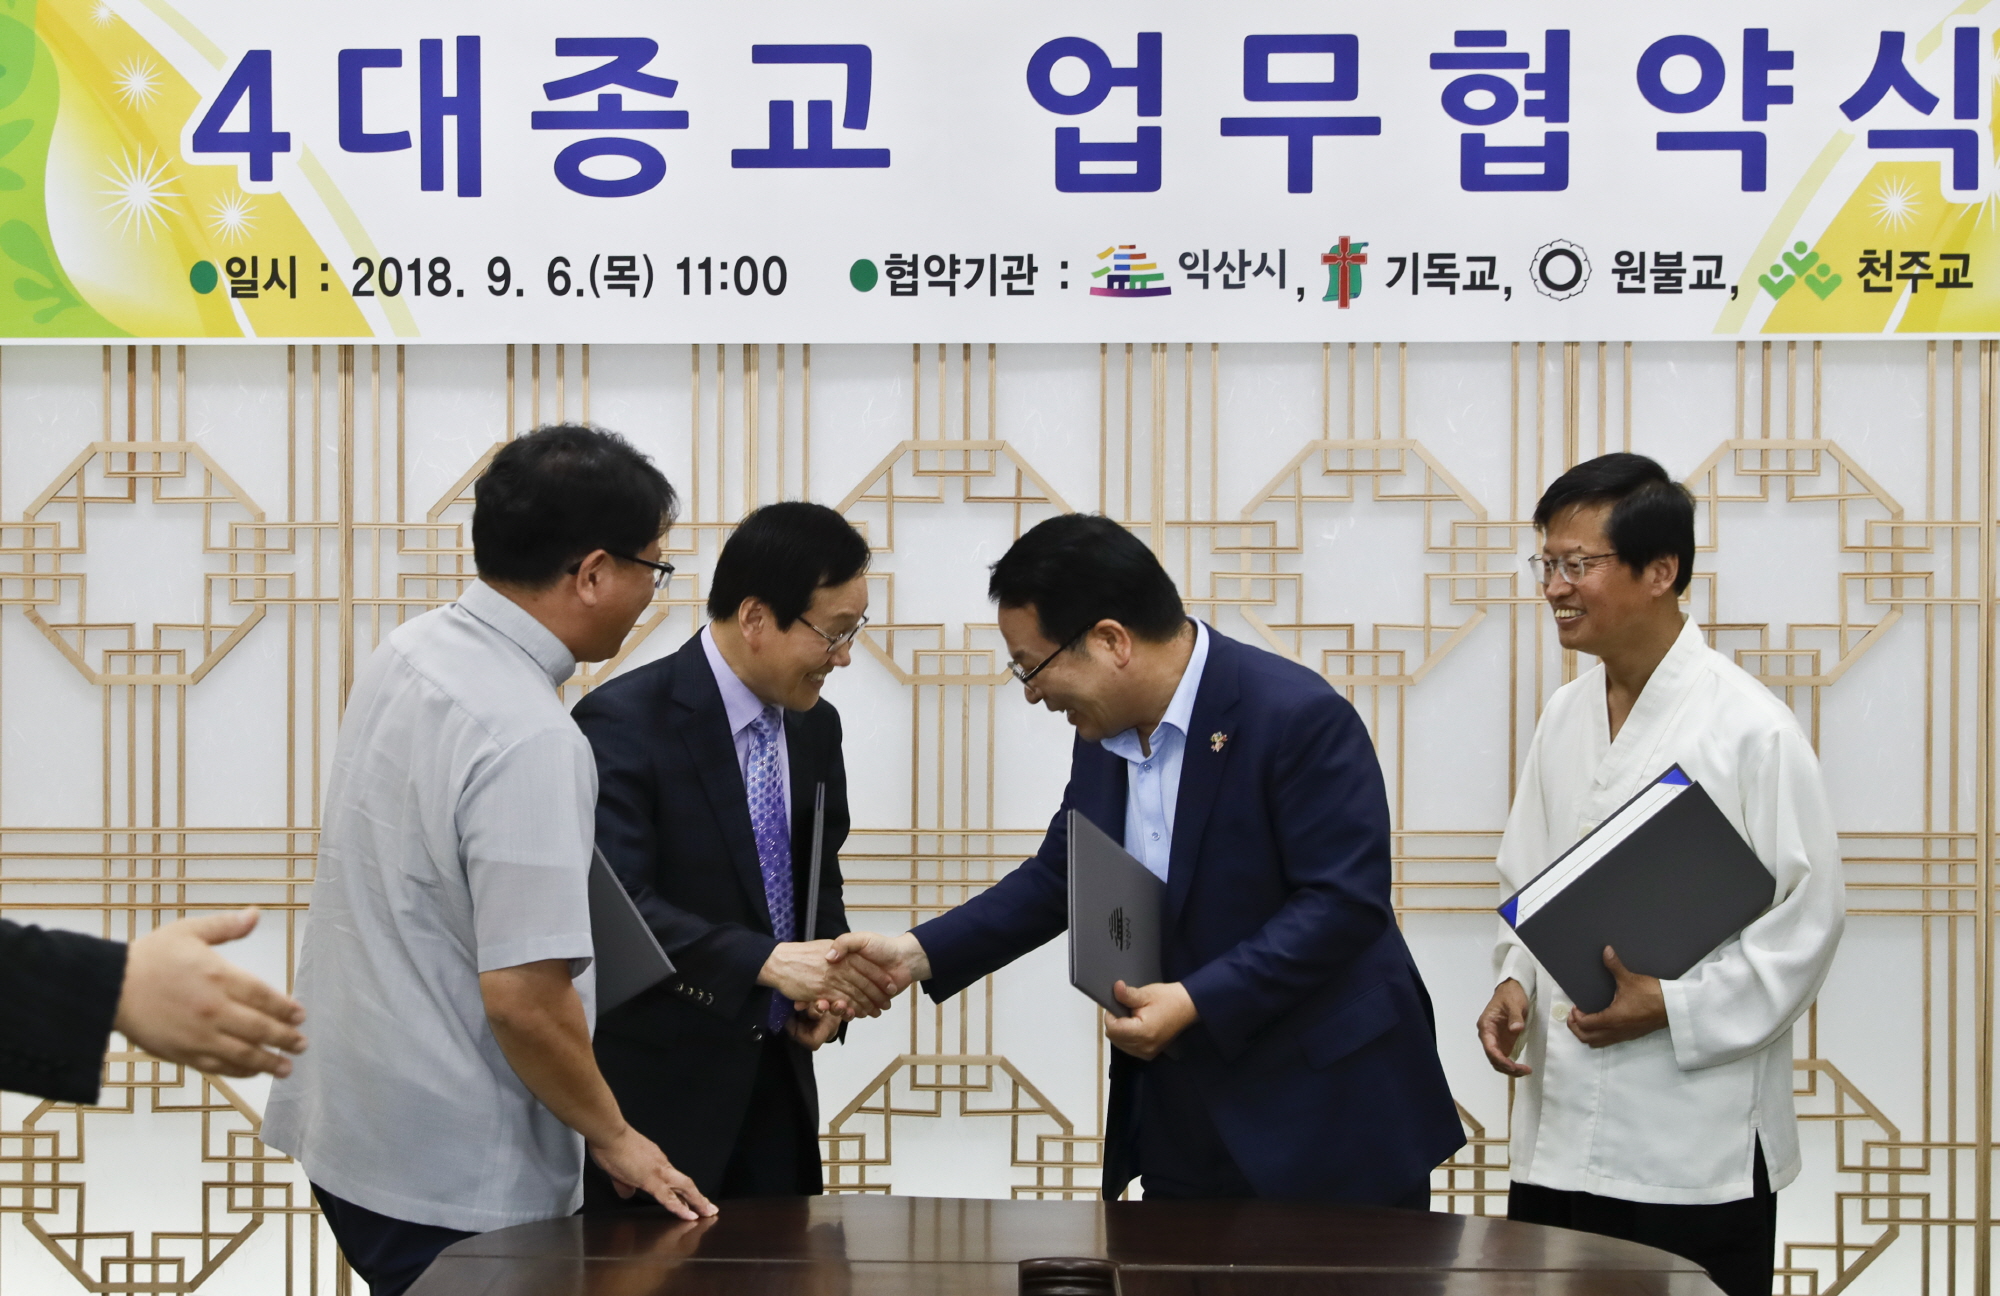 9월 6일 전국체전(장애인체전) 성공개최를 위한 4대종교와 업무협약식3